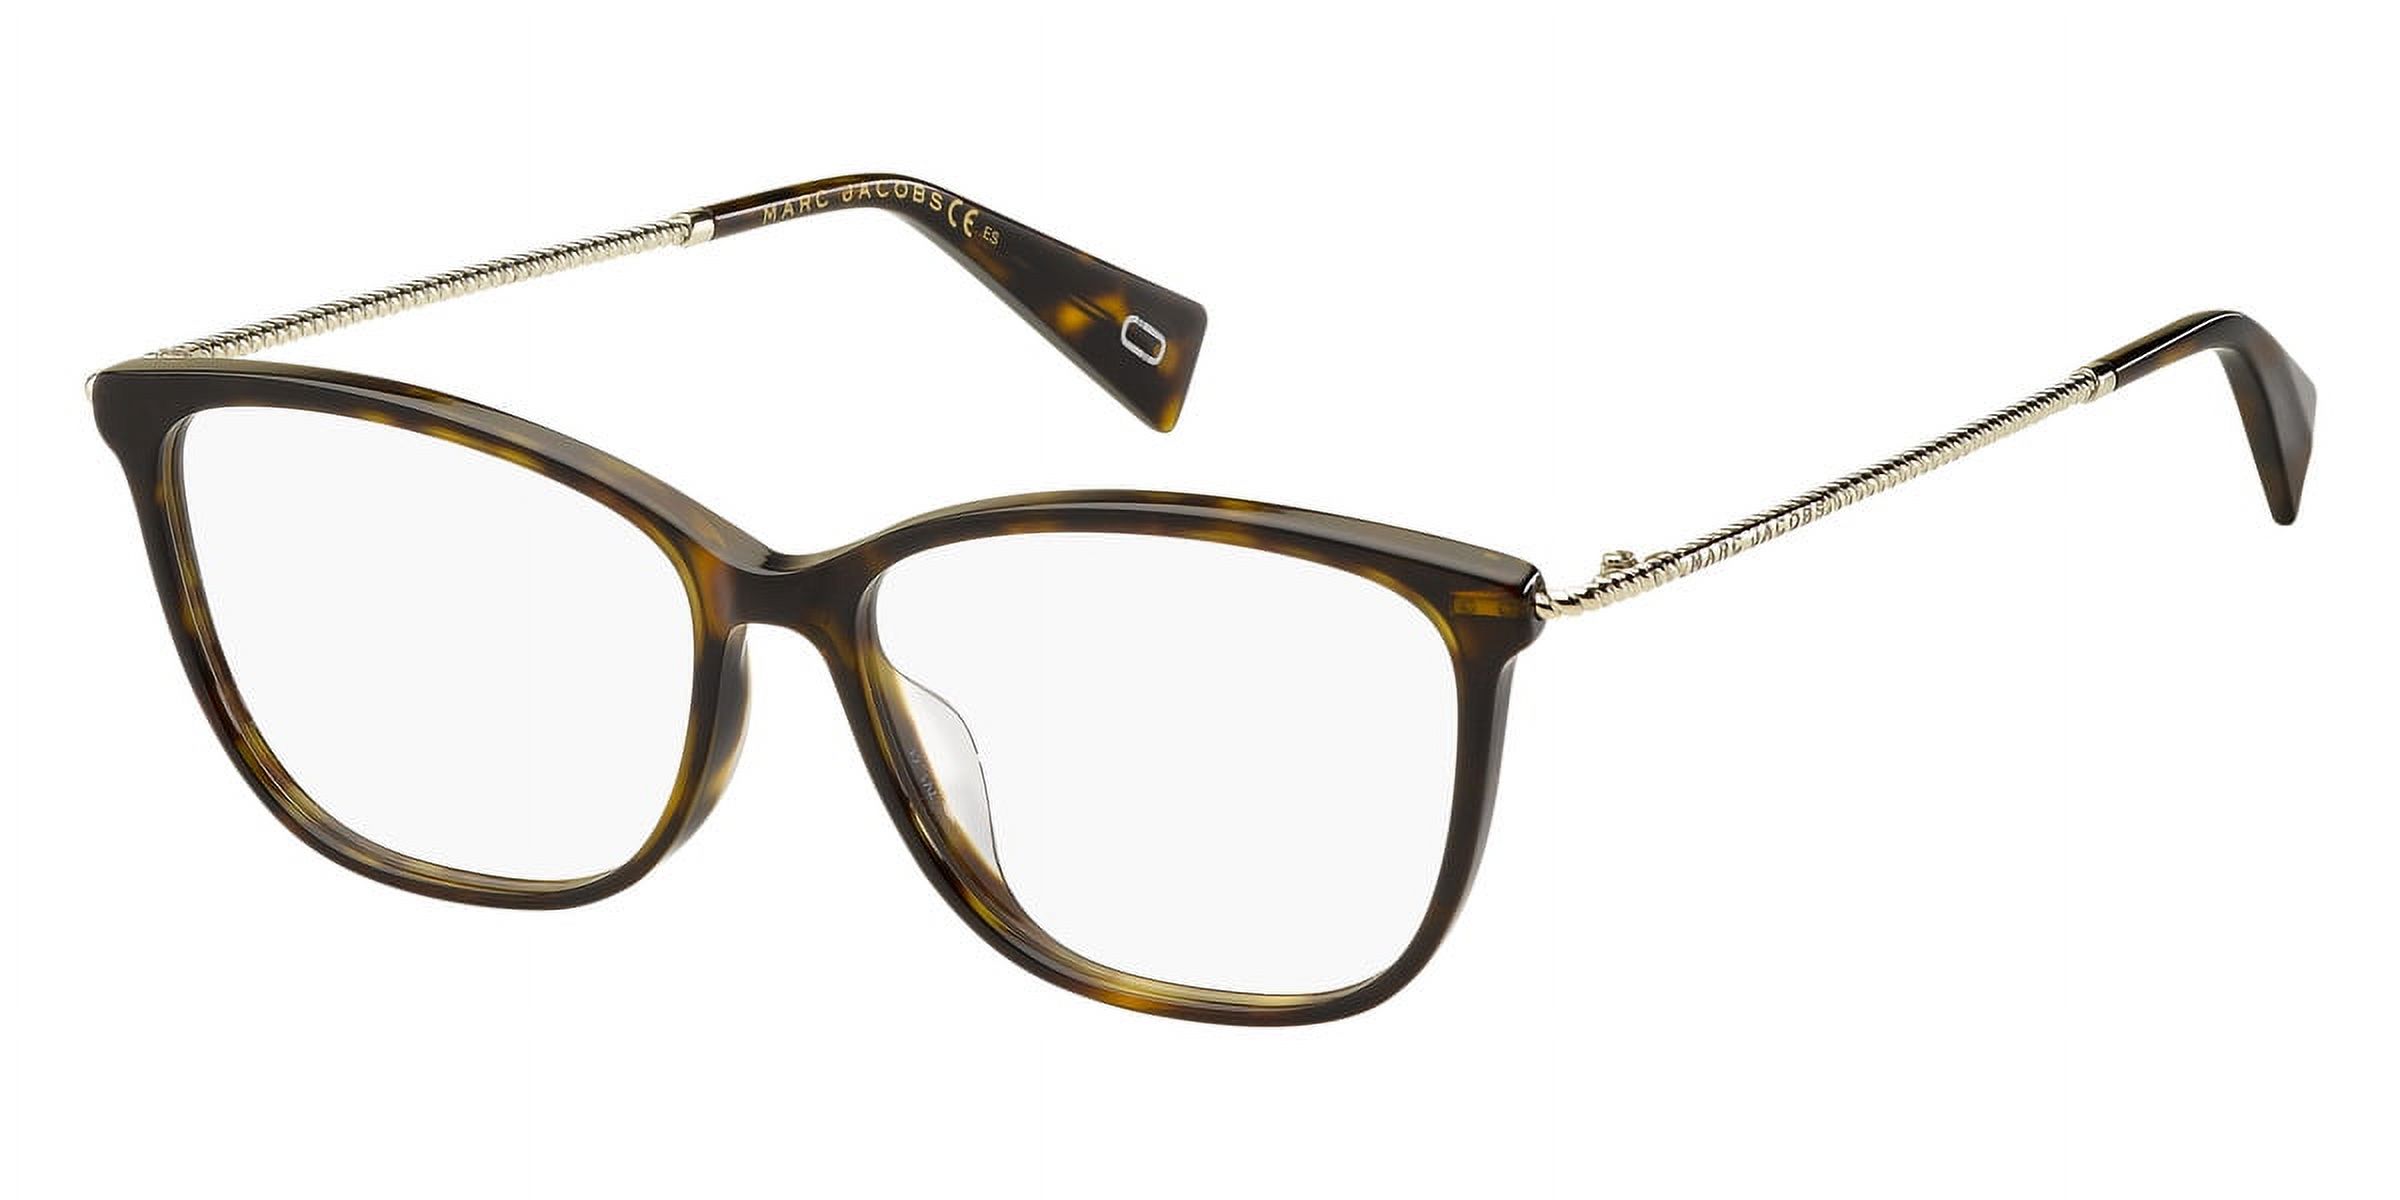 Marc Jacobs 258 Full Rim Rectangular Dark Havana Eyeglasses - image 1 of 3